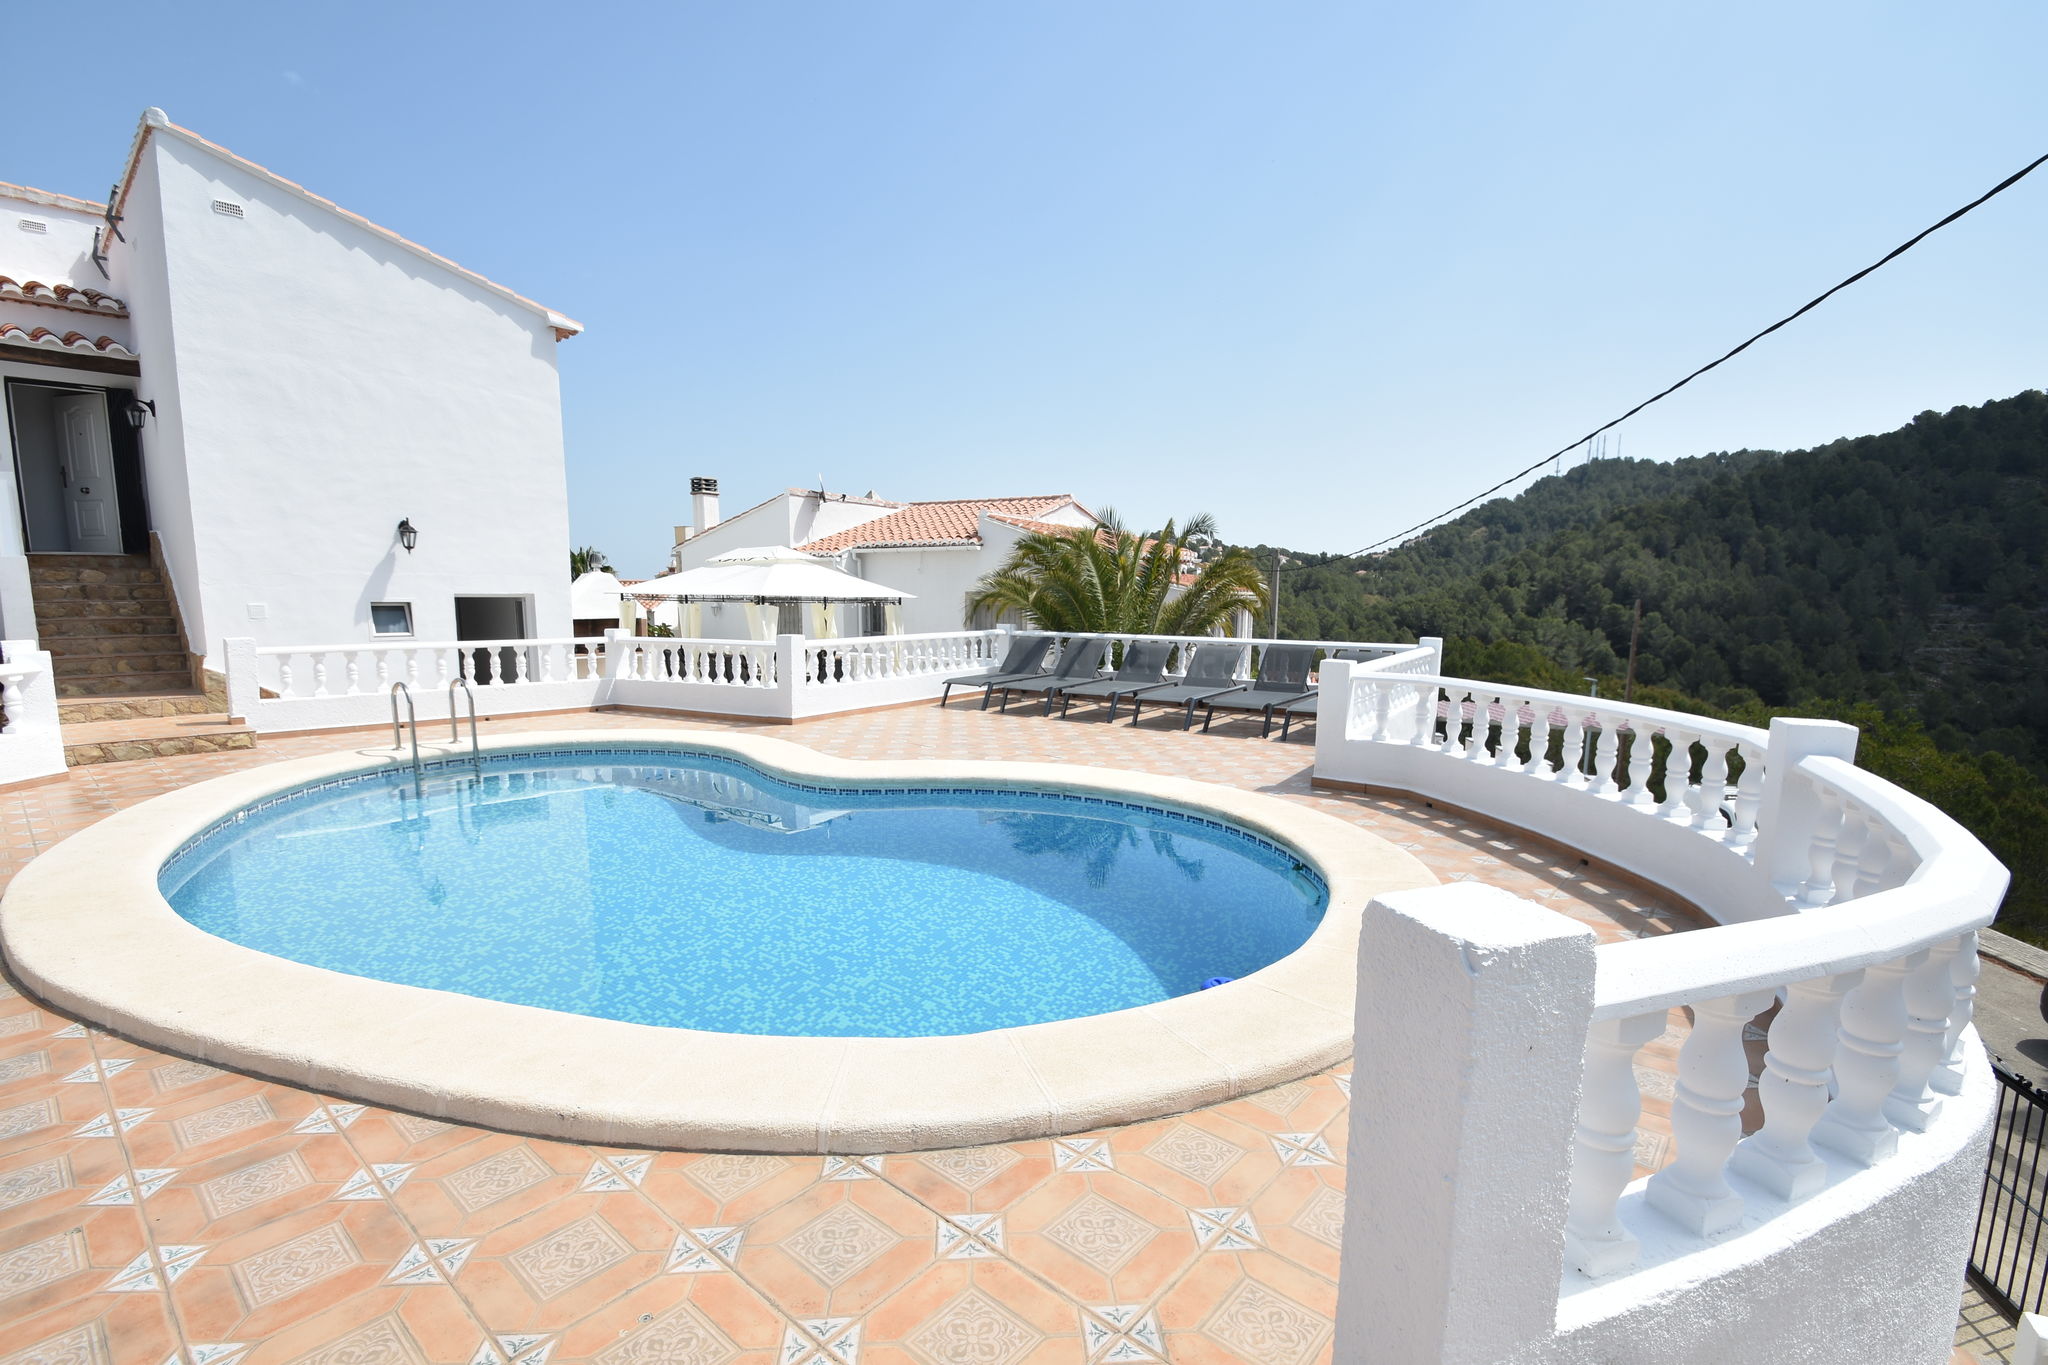 Fantastic villa in Oliva with private swimming pool